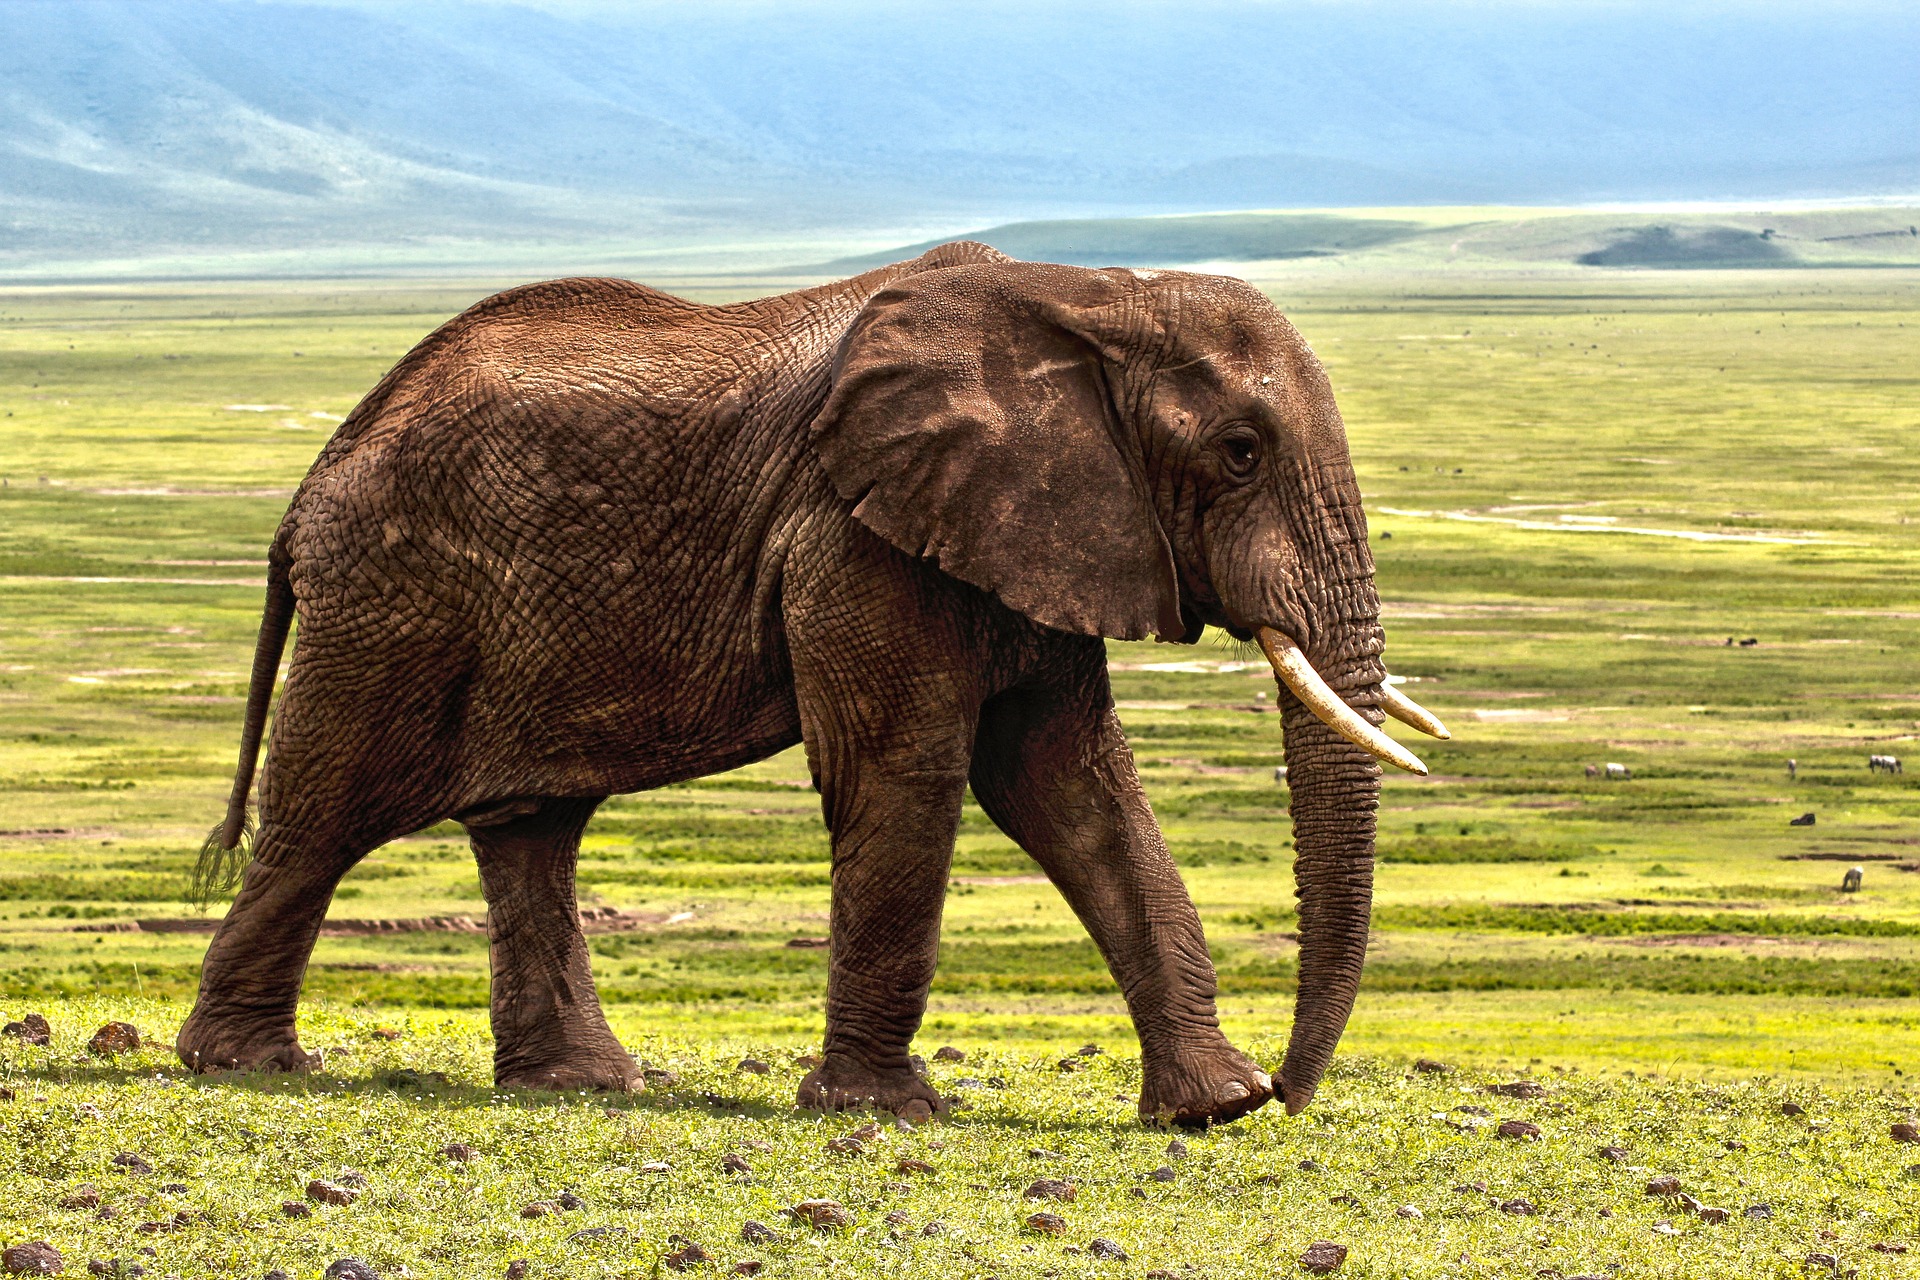 An elephant on the savannah in Africa